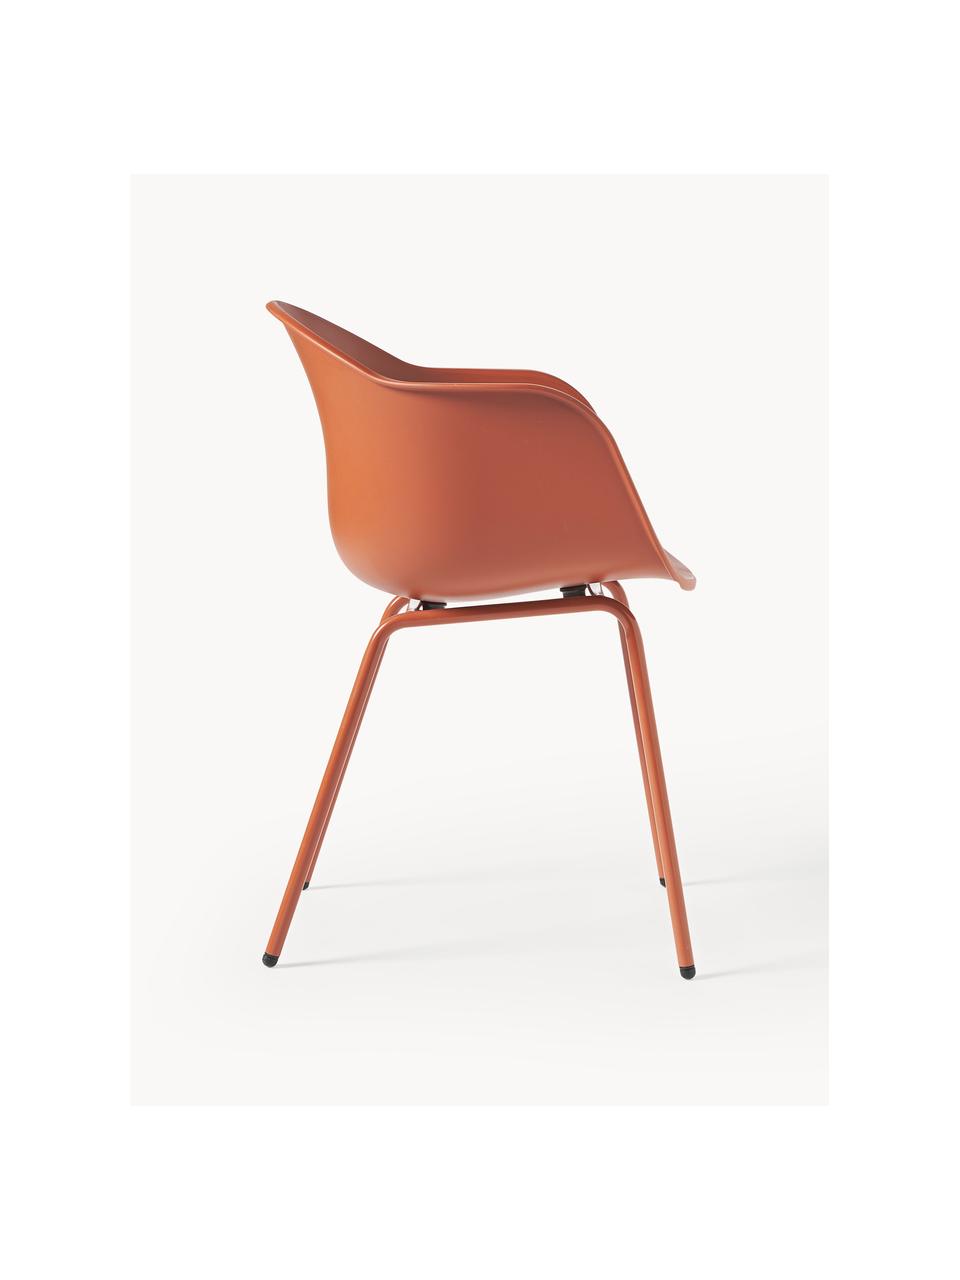 Interiérová/exteriérová židle Claire, Hnědá, Š 60 cm, H 54 cm